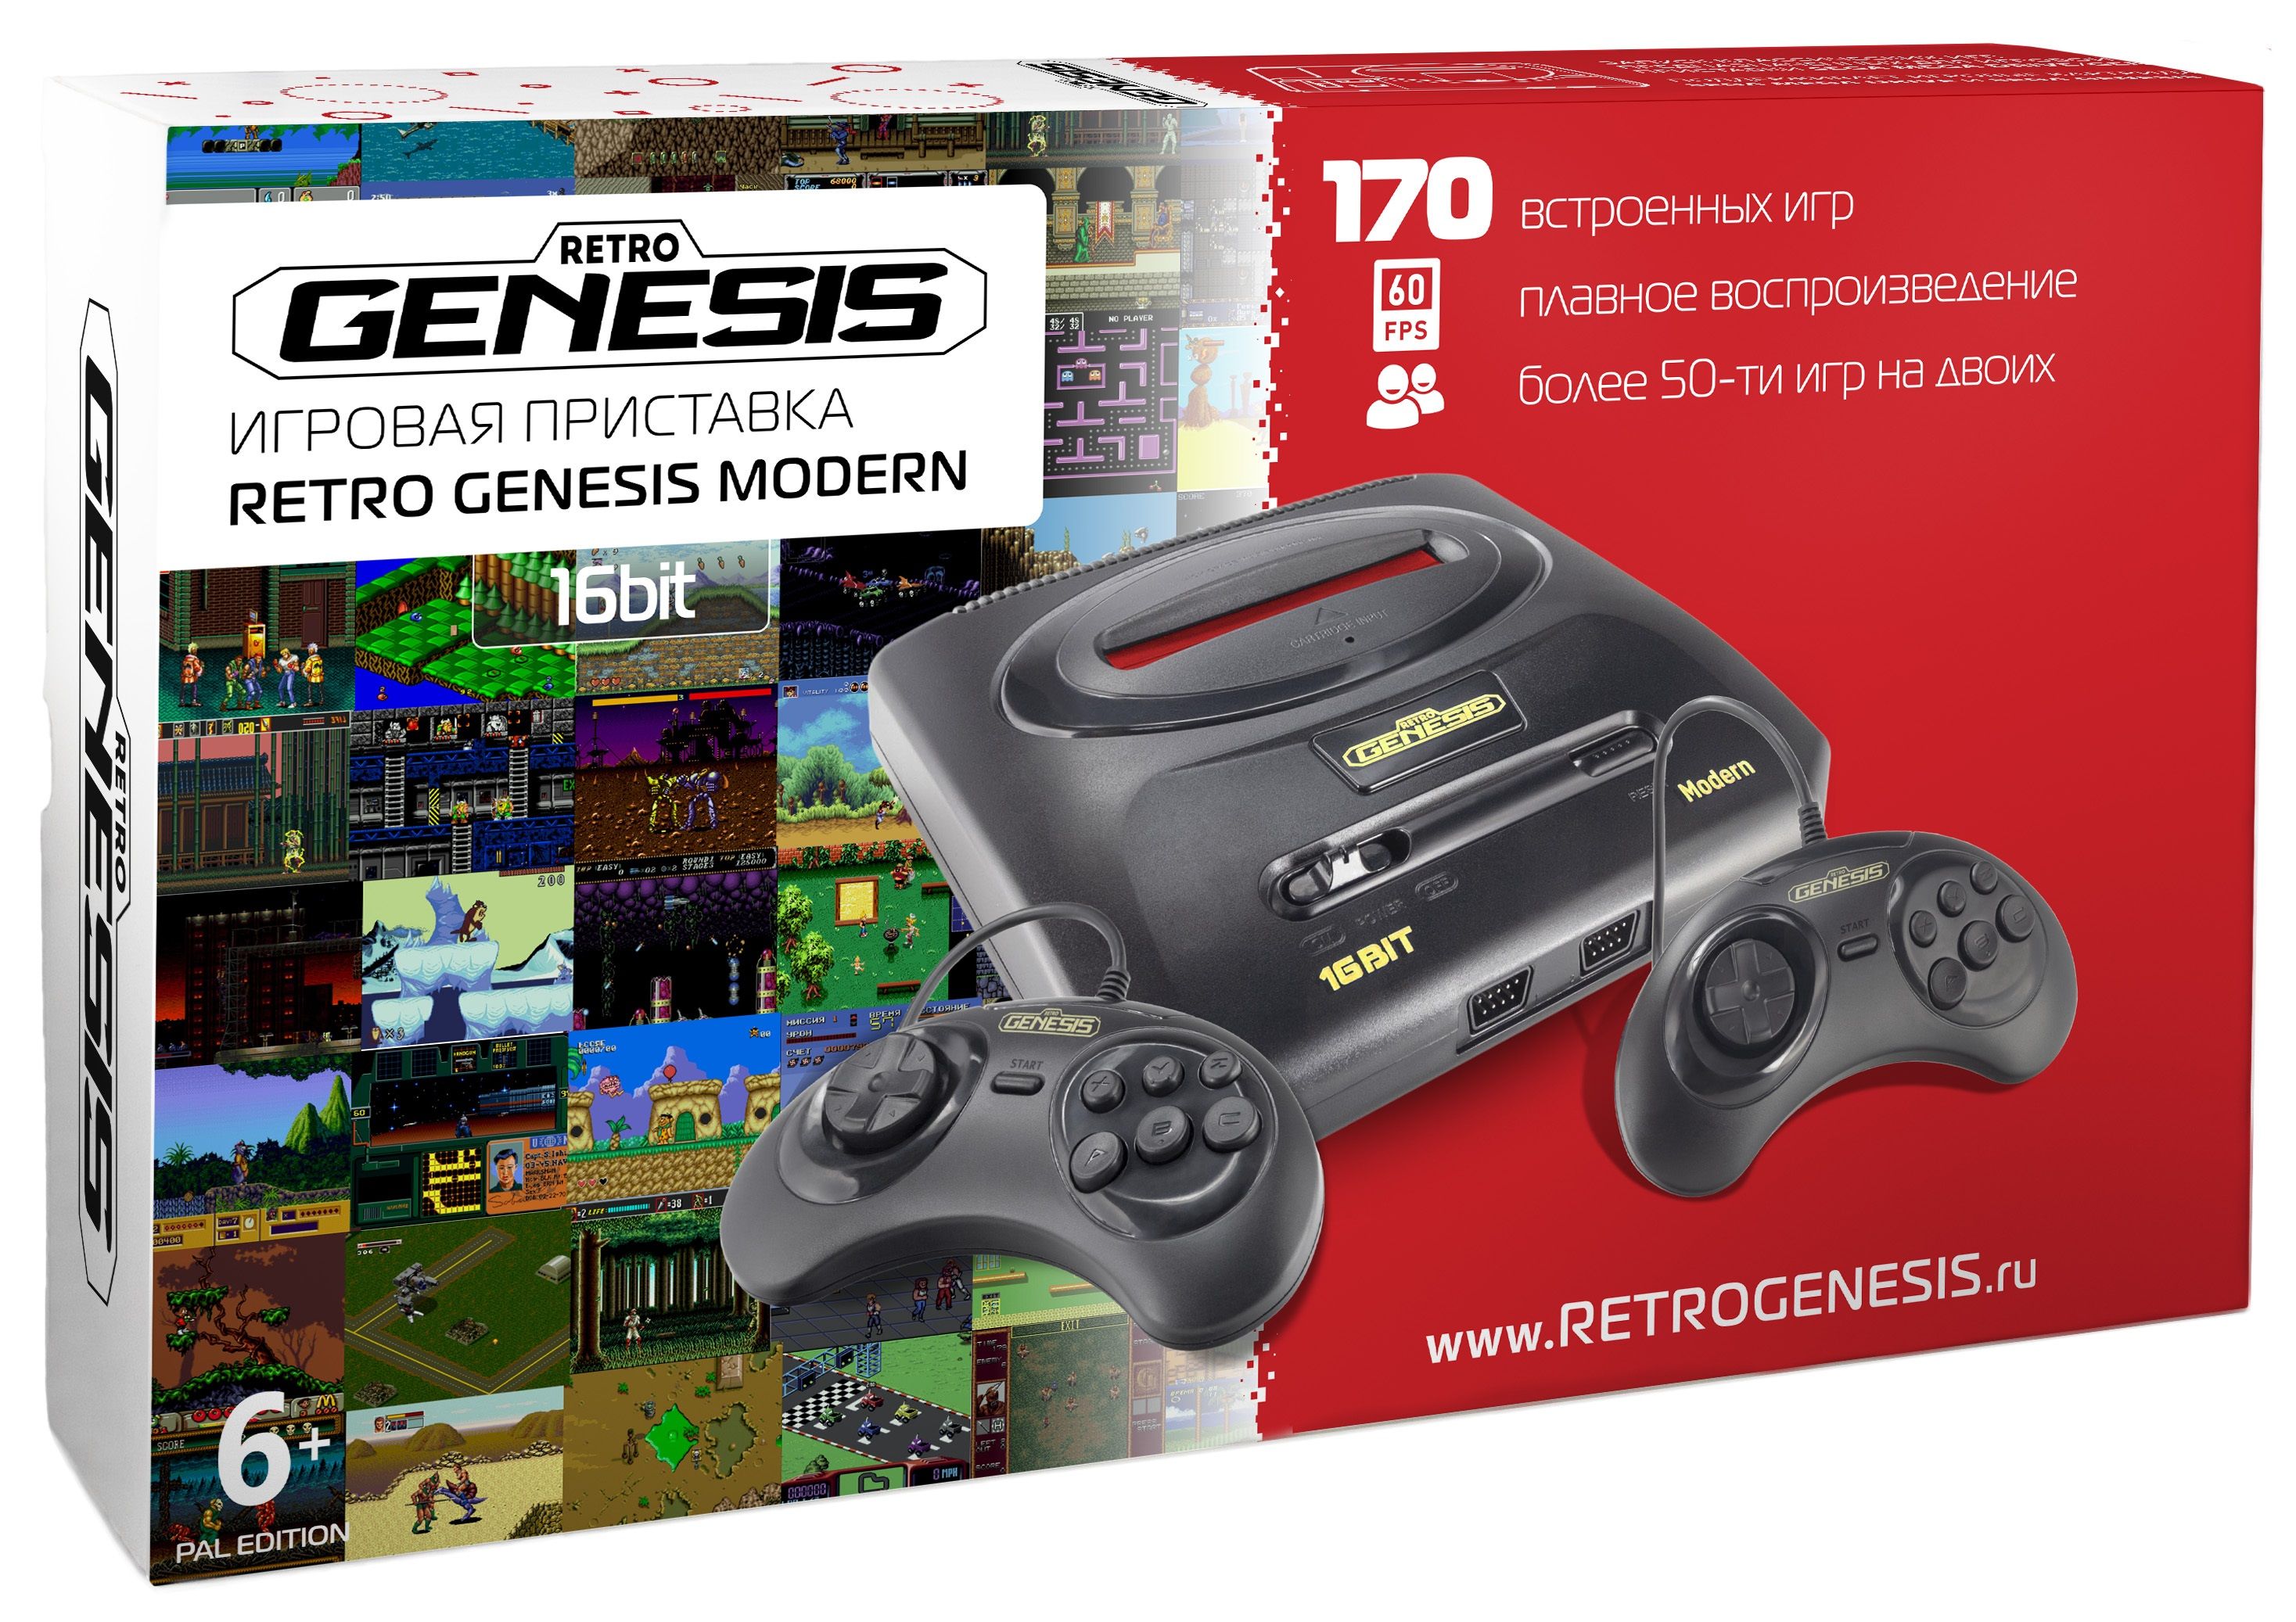 Игры на приставку 16 бит. Игровая приставка Retro Genesis Modern + 170 игр. Игровая приставка Sega Retro Genesis Modern conskdn56 черный +170 игр. Приставка Genesis 16 bit 170 игр. Ретро Генезис игровая приставка 16 бит.